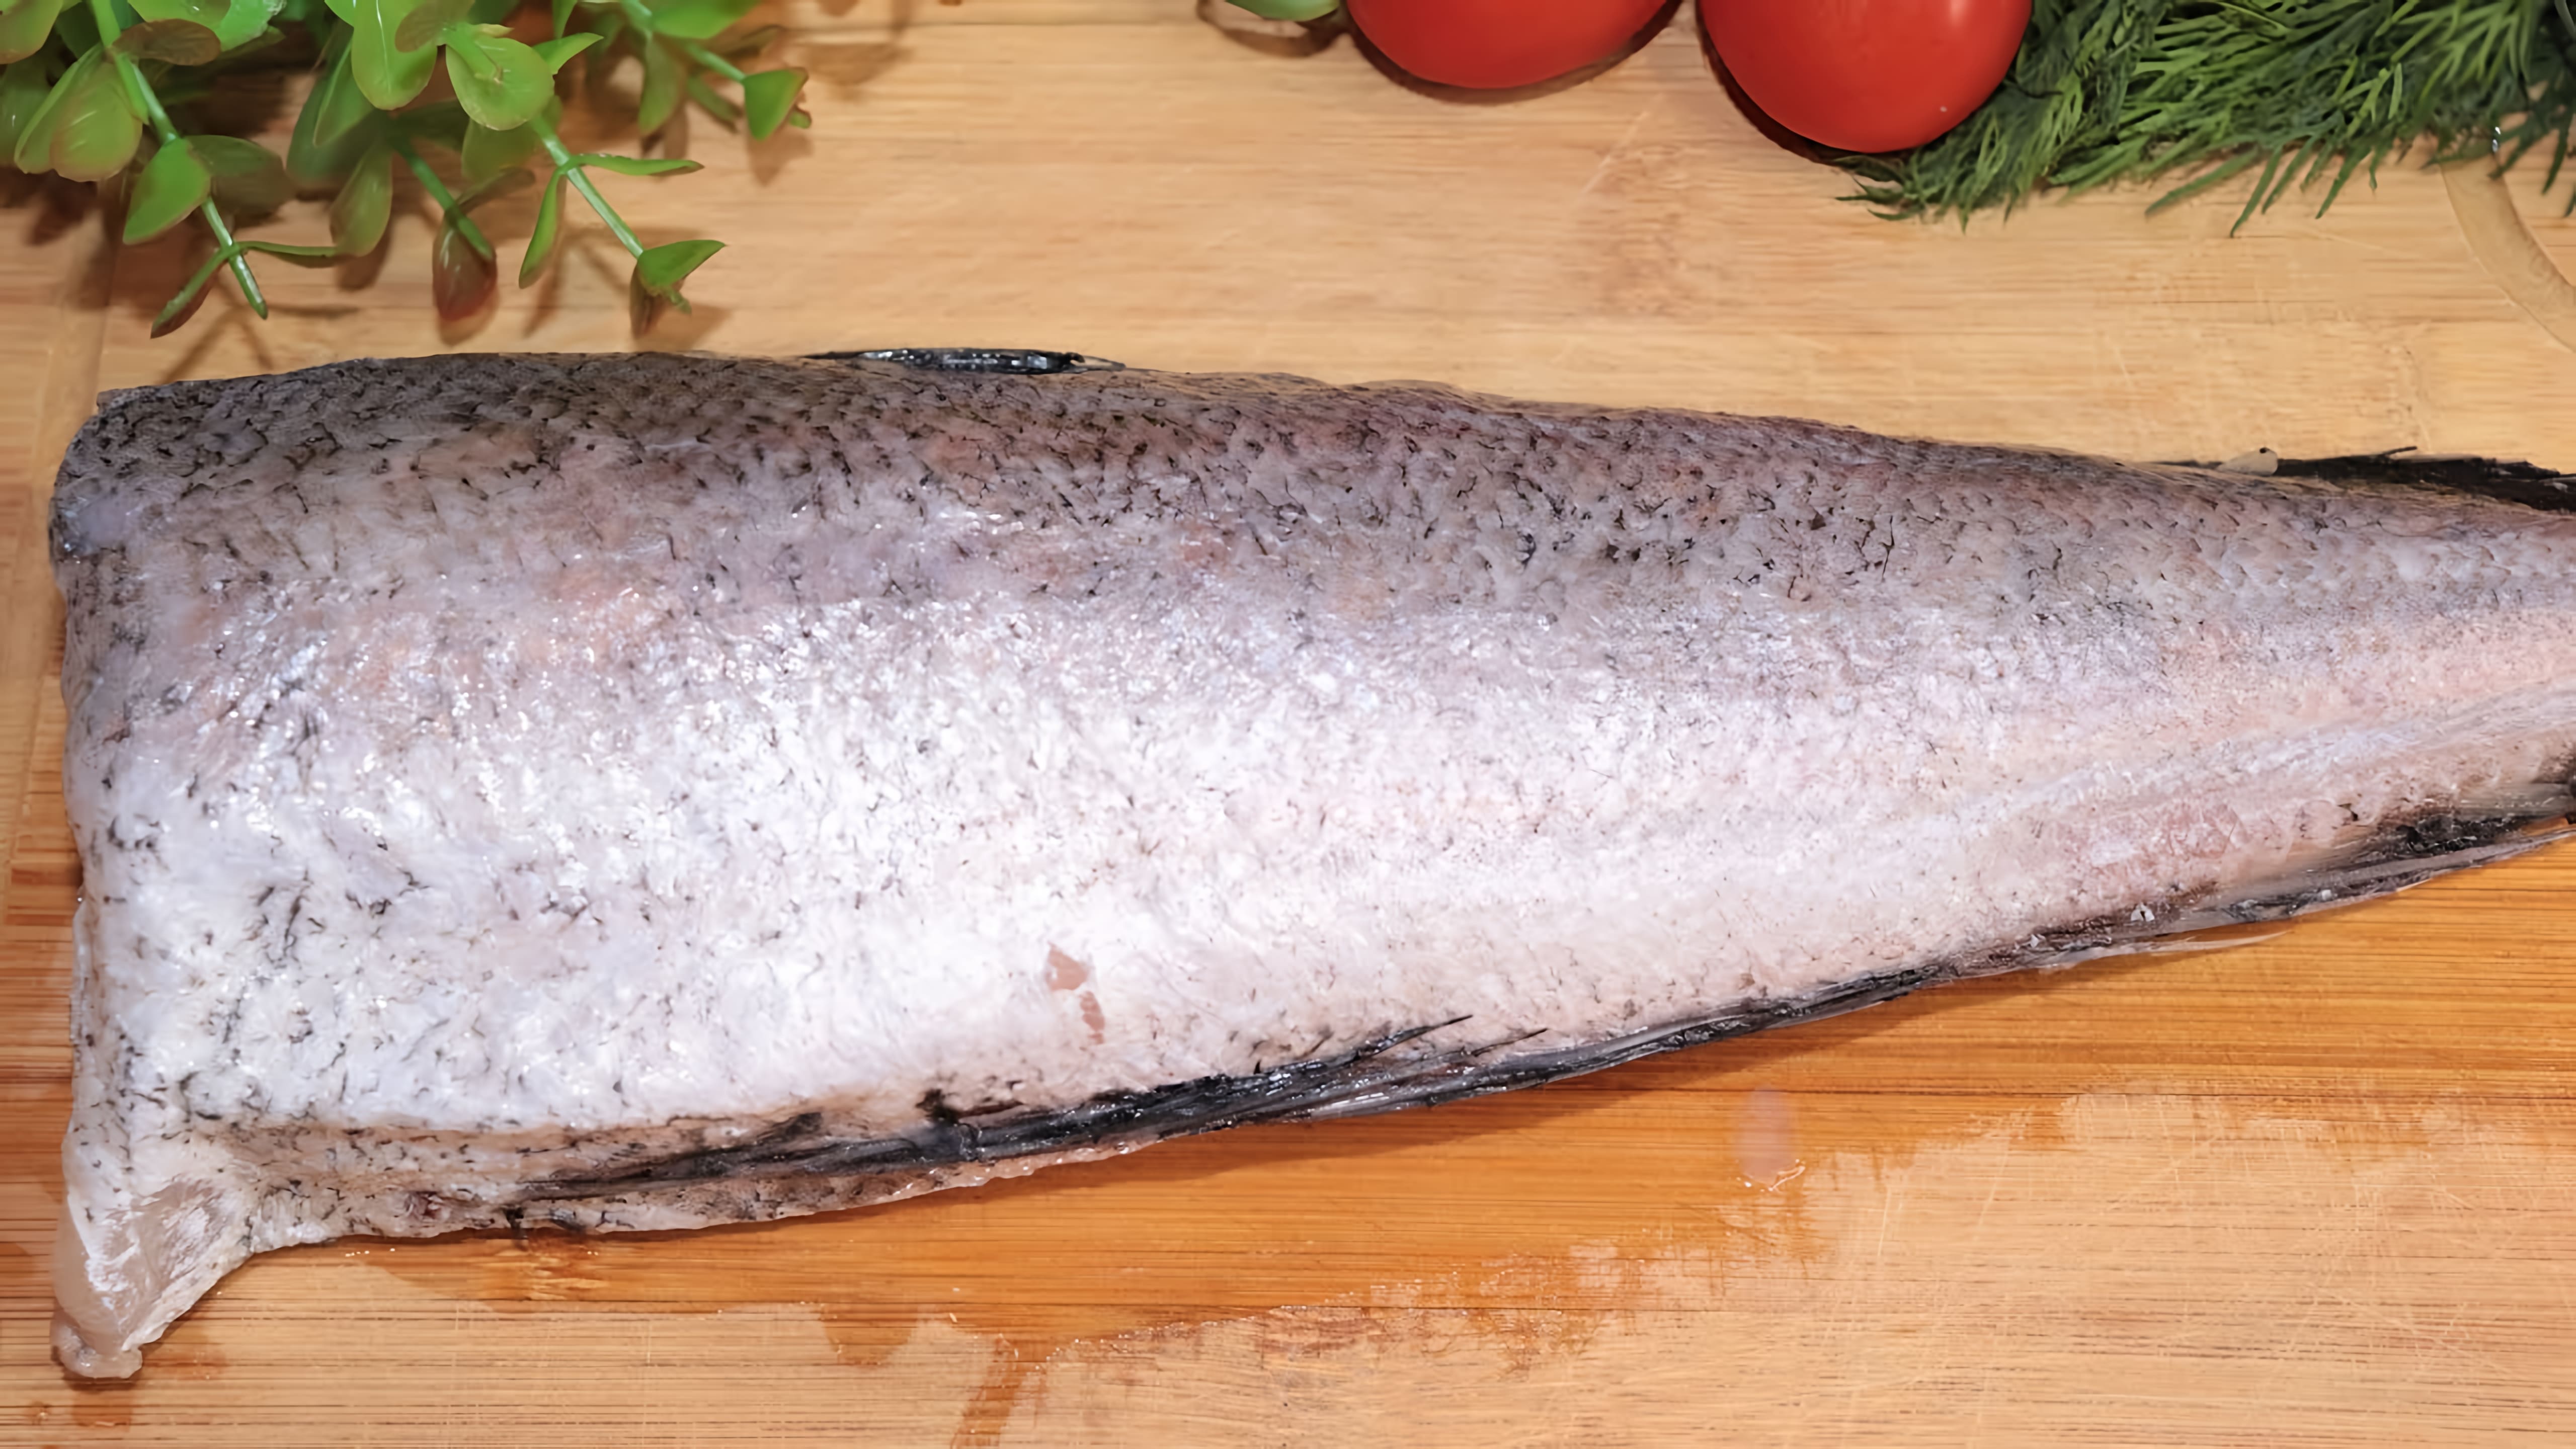 Видео: Если вы устали от однообразных блюд, то этот рецепт рыбы на ужин станет отличной альтернативой!